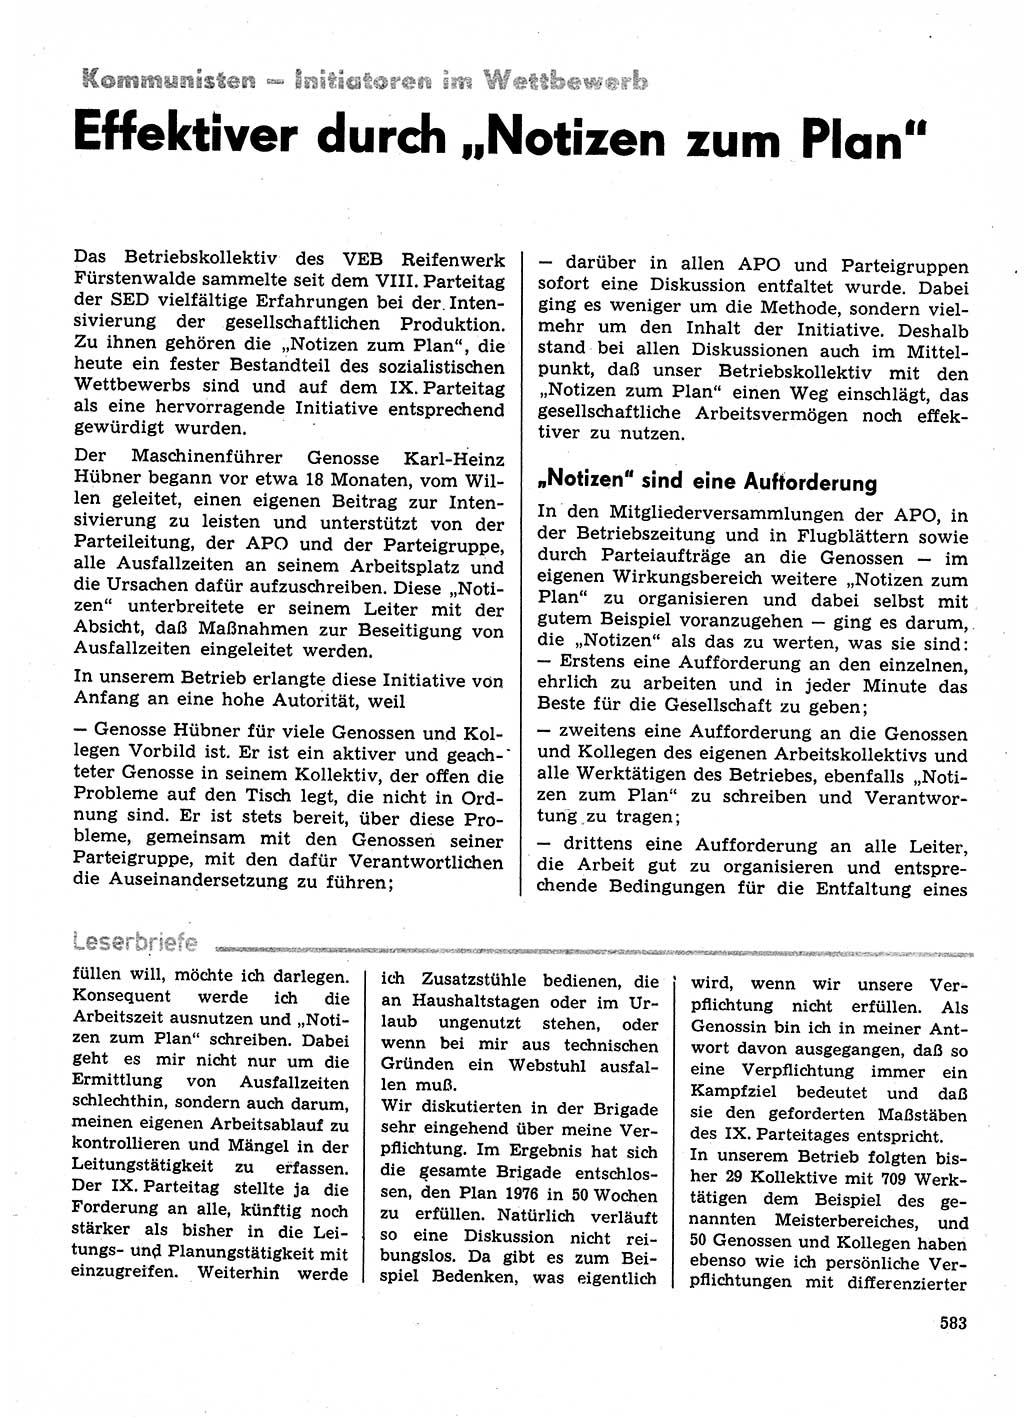 Neuer Weg (NW), Organ des Zentralkomitees (ZK) der SED (Sozialistische Einheitspartei Deutschlands) für Fragen des Parteilebens, 31. Jahrgang [Deutsche Demokratische Republik (DDR)] 1976, Seite 583 (NW ZK SED DDR 1976, S. 583)